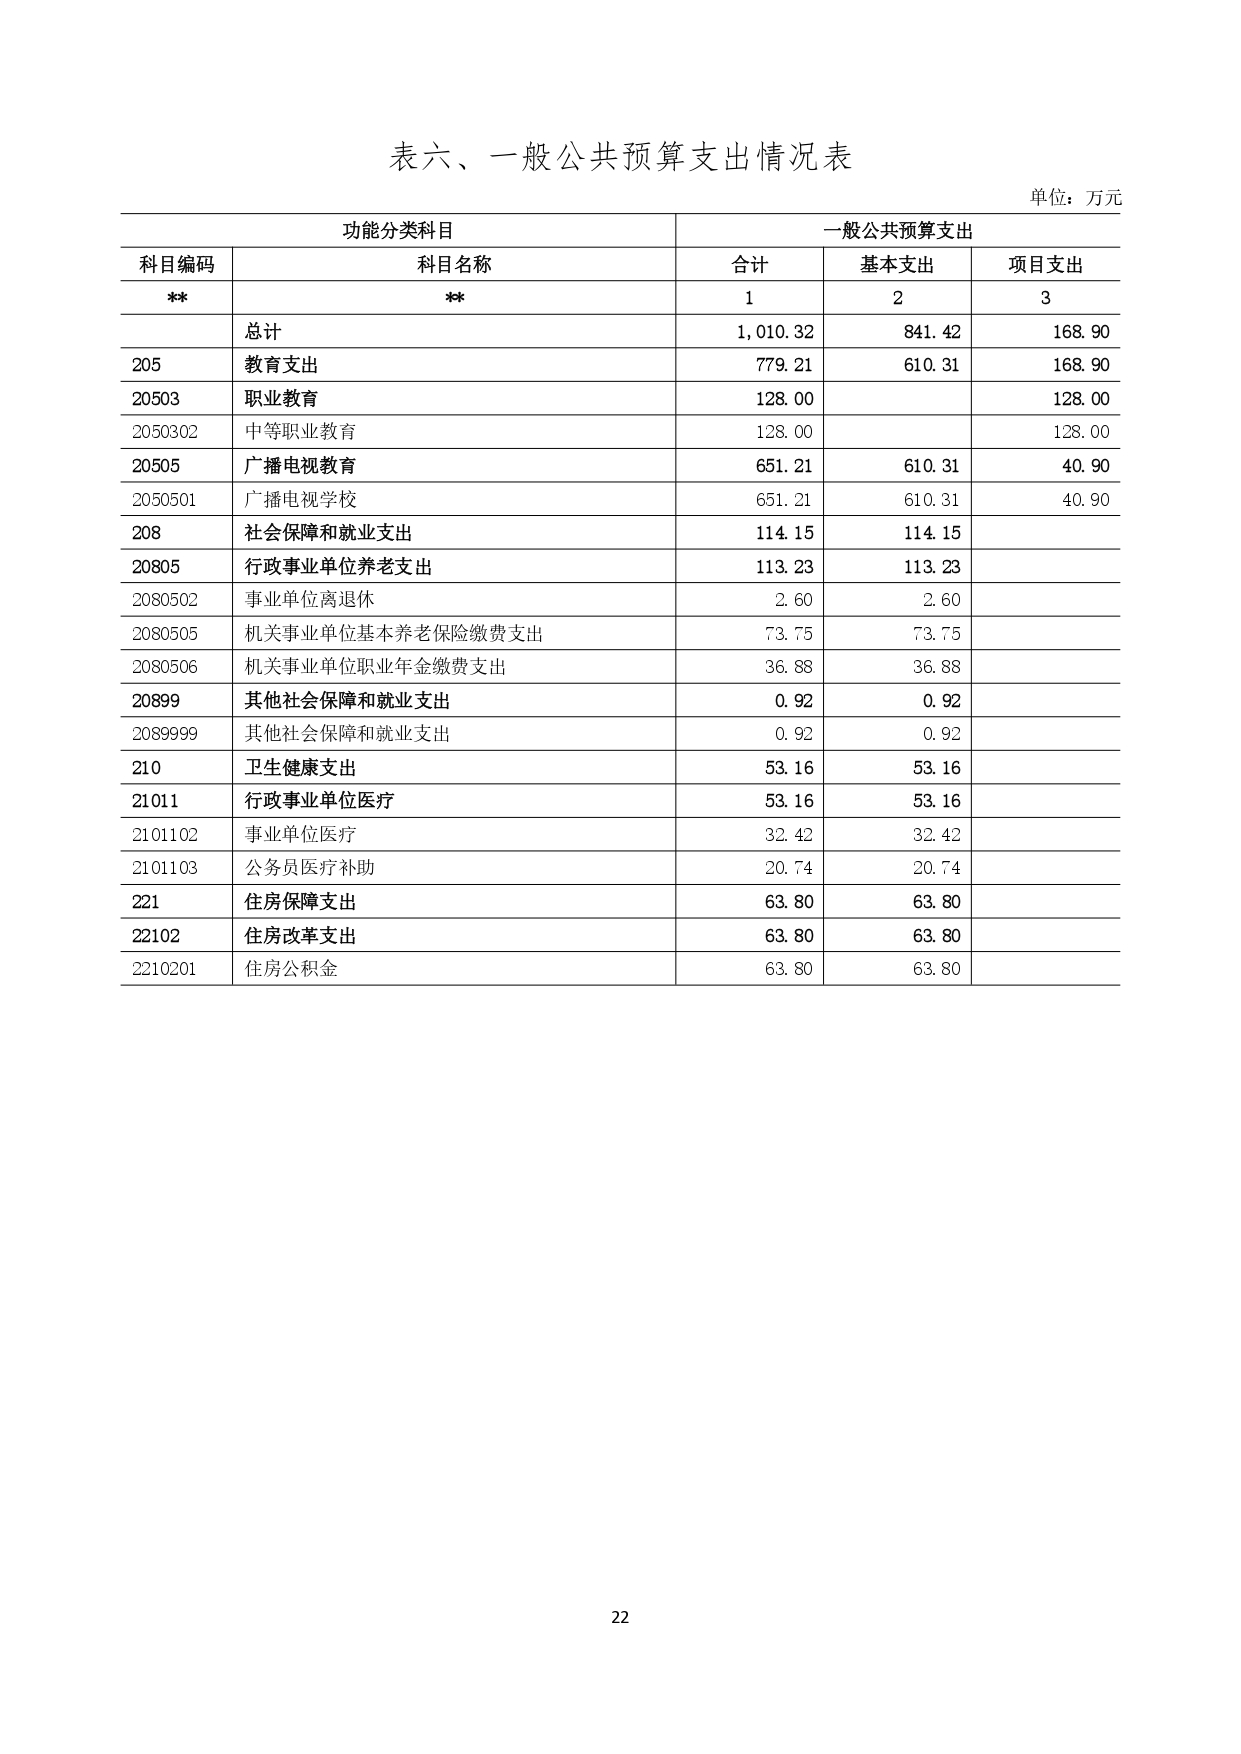 甘肃省广播电视学校2023年单位预算公开报告_page-0023.jpg